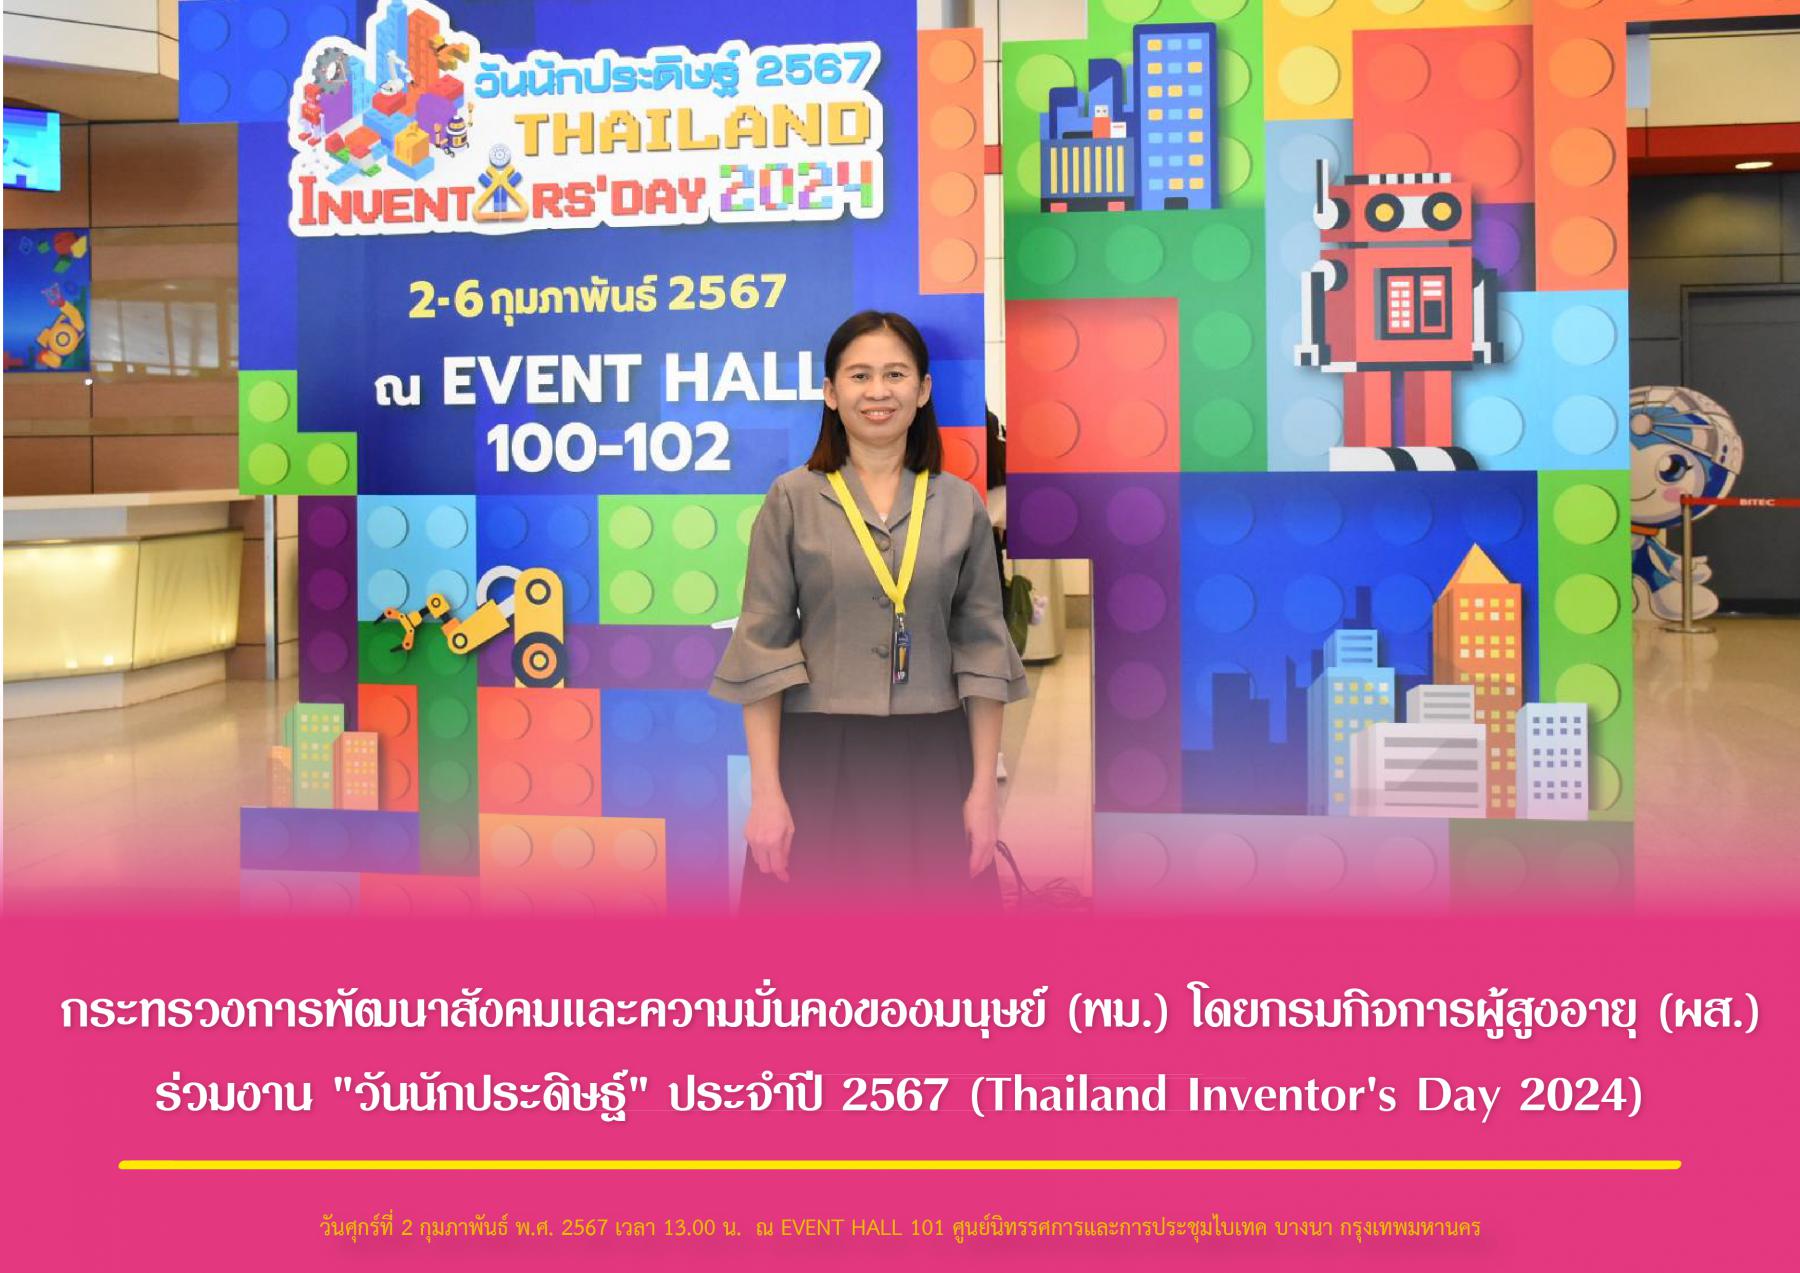 กระทรวงการพัฒนาสังคมและความมั่นคงของมนุษย์ (พม.) โดยกรมกิจการผู้สูงอายุ (ผส.) ร่วมงาน "วันนักประดิษฐ์" ประจำปี 2567 (Thailand Inventor's Day 2024)